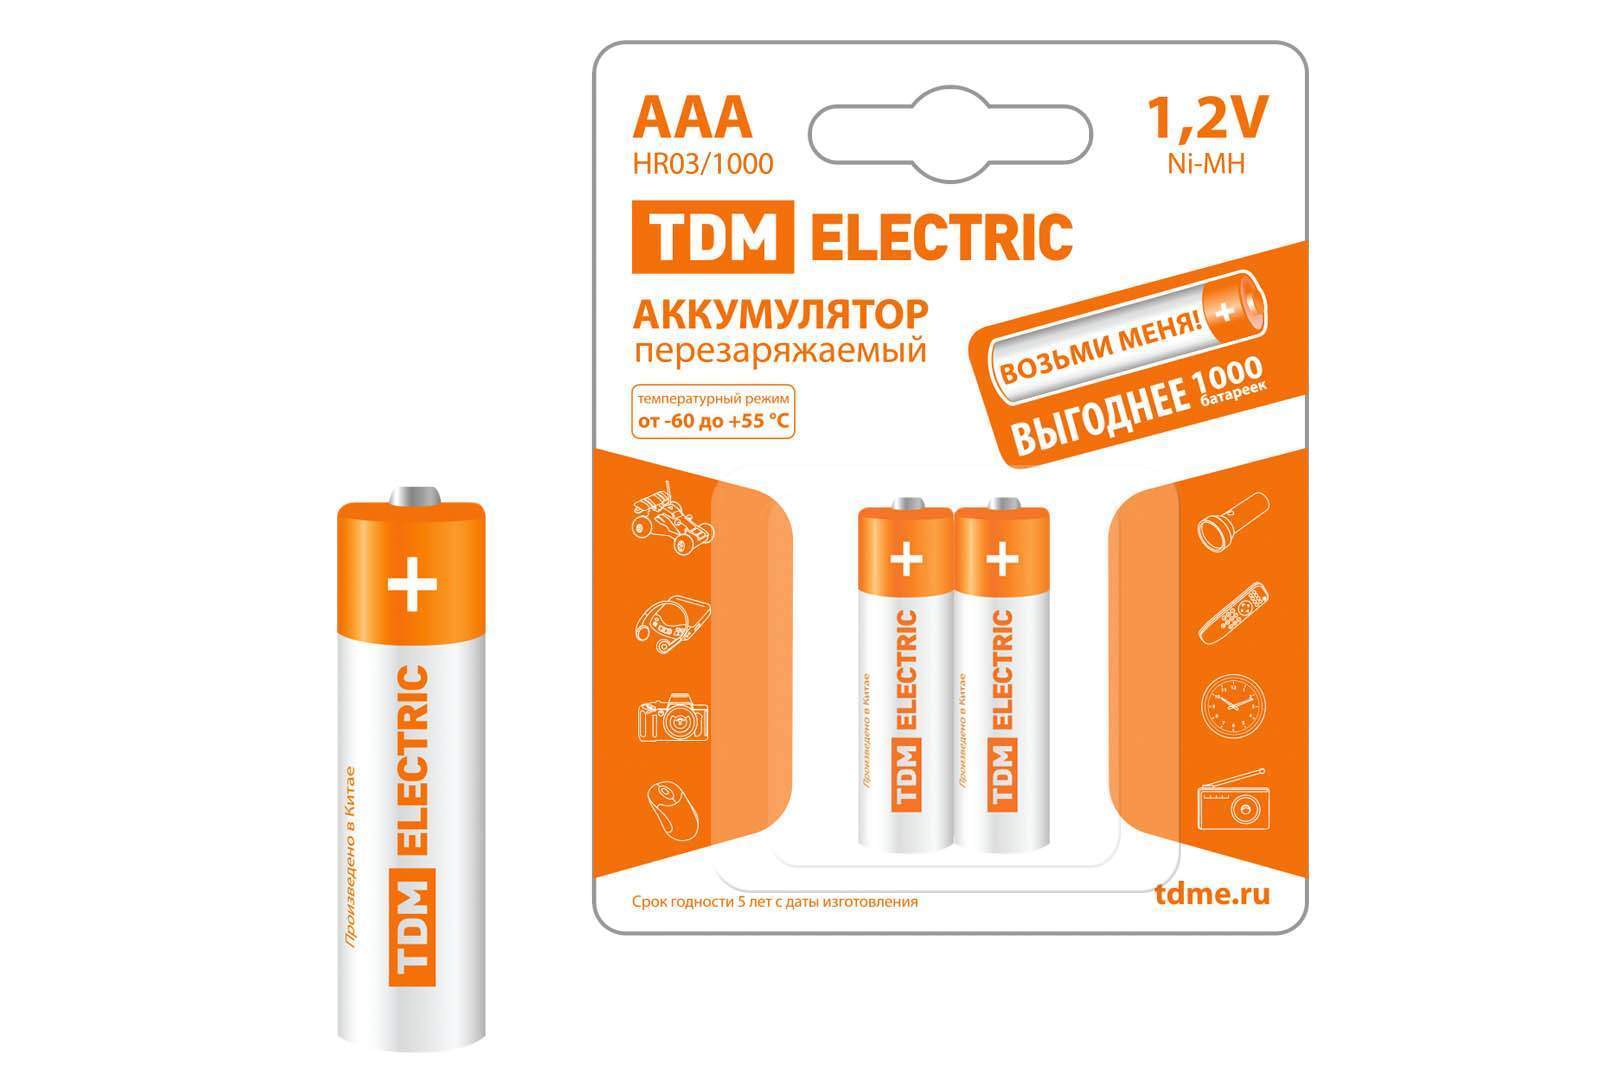 аккумулятор aaa-1000 mah ni-mh bp-2 tdm от BTSprom.by